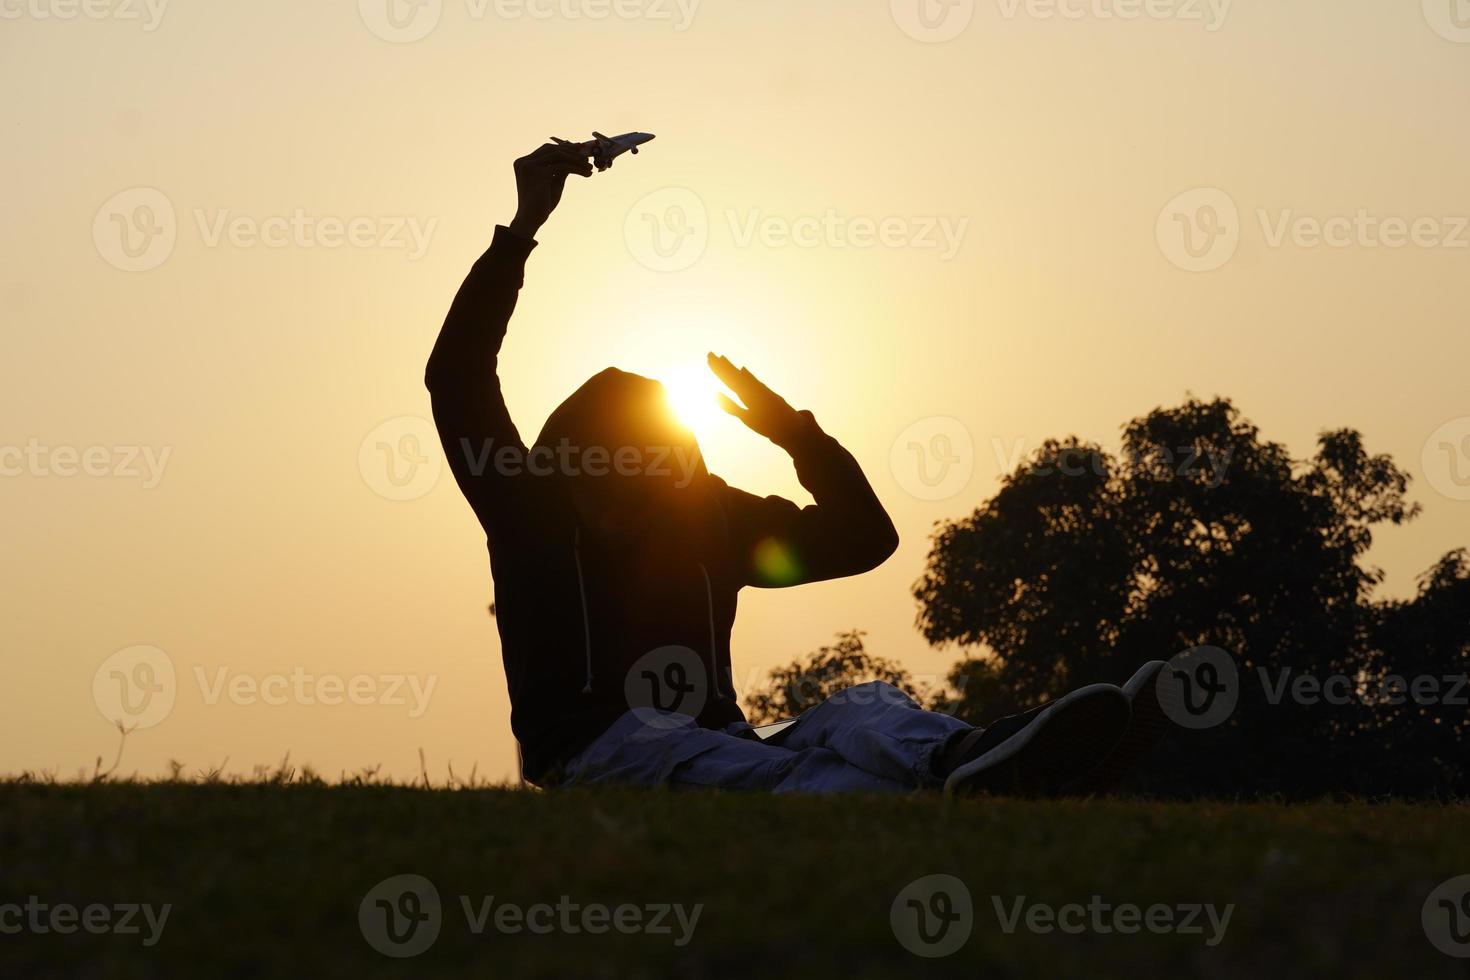 menino feliz com um avião de brinquedo em um fundo por do sol sobre um campo de trigo foto